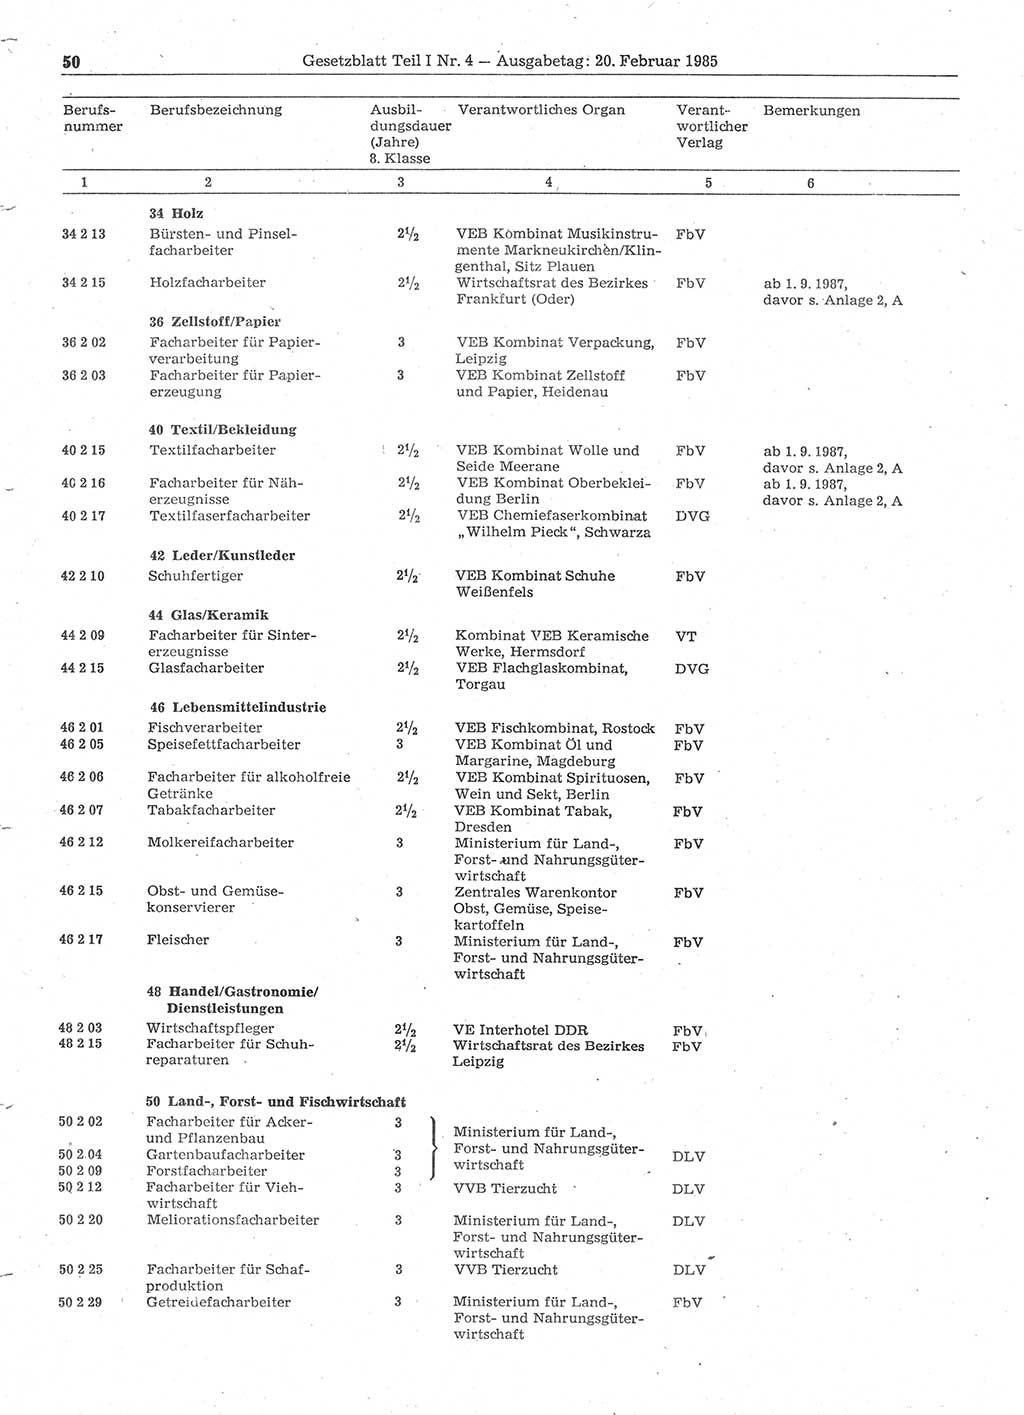 Gesetzblatt (GBl.) der Deutschen Demokratischen Republik (DDR) Teil Ⅰ 1985, Seite 50 (GBl. DDR Ⅰ 1985, S. 50)